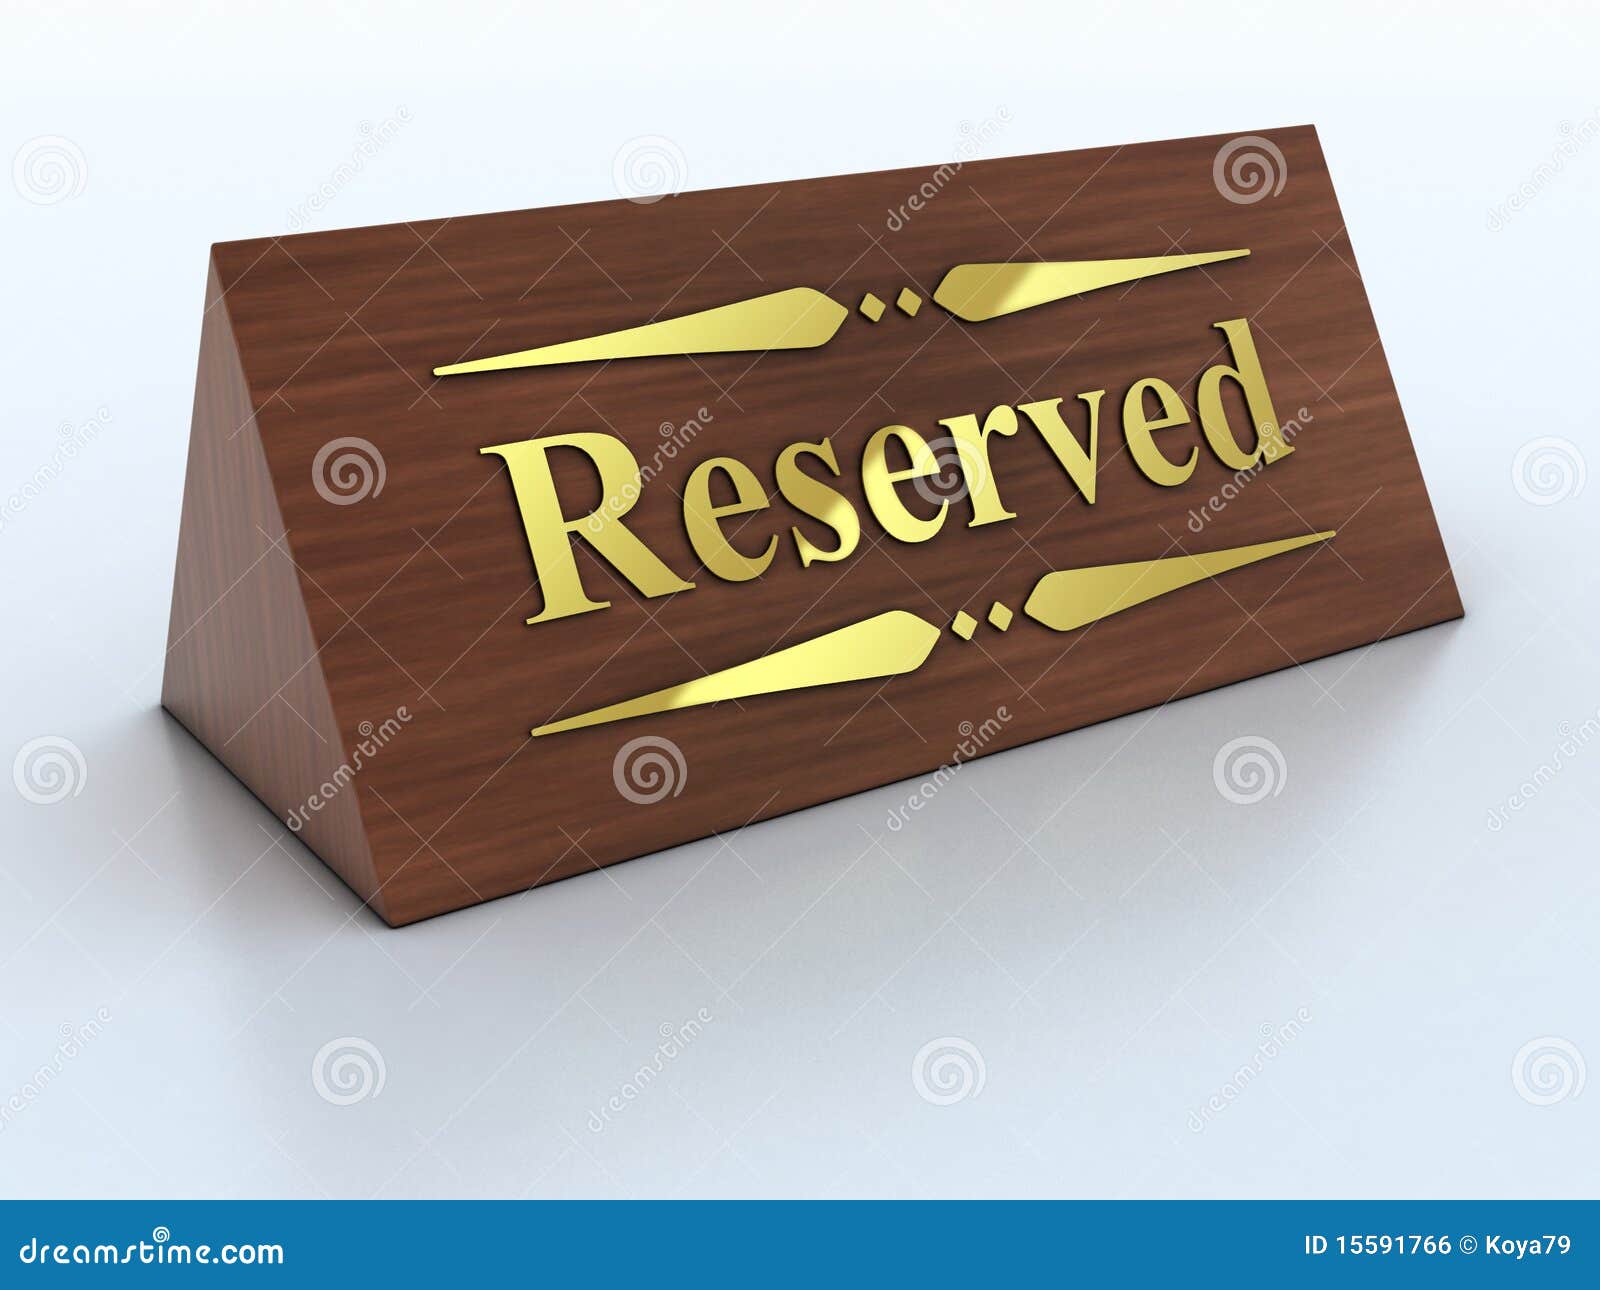 Reservation sign stock illustration. Illustration of cafe - 15591766